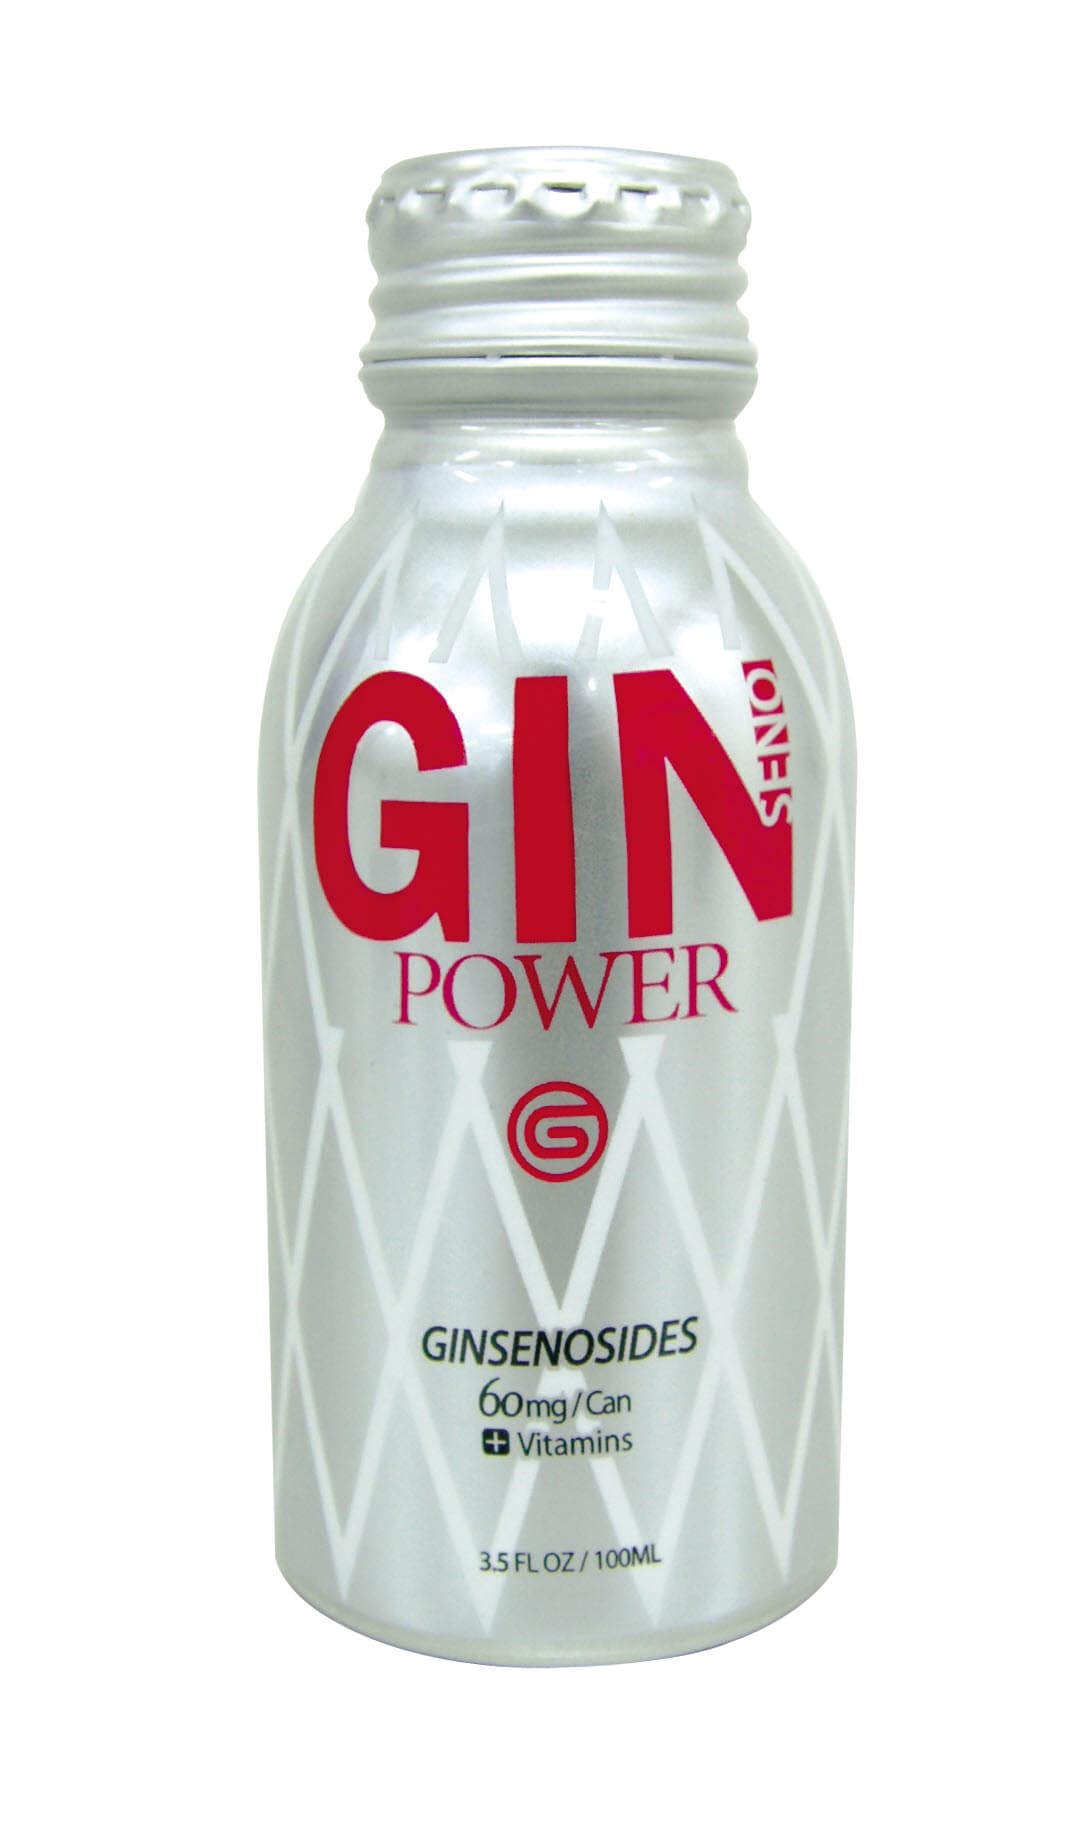 Ginseno Power_ Ginseng beverage_ NB Can_ 60mg Ginsenosides